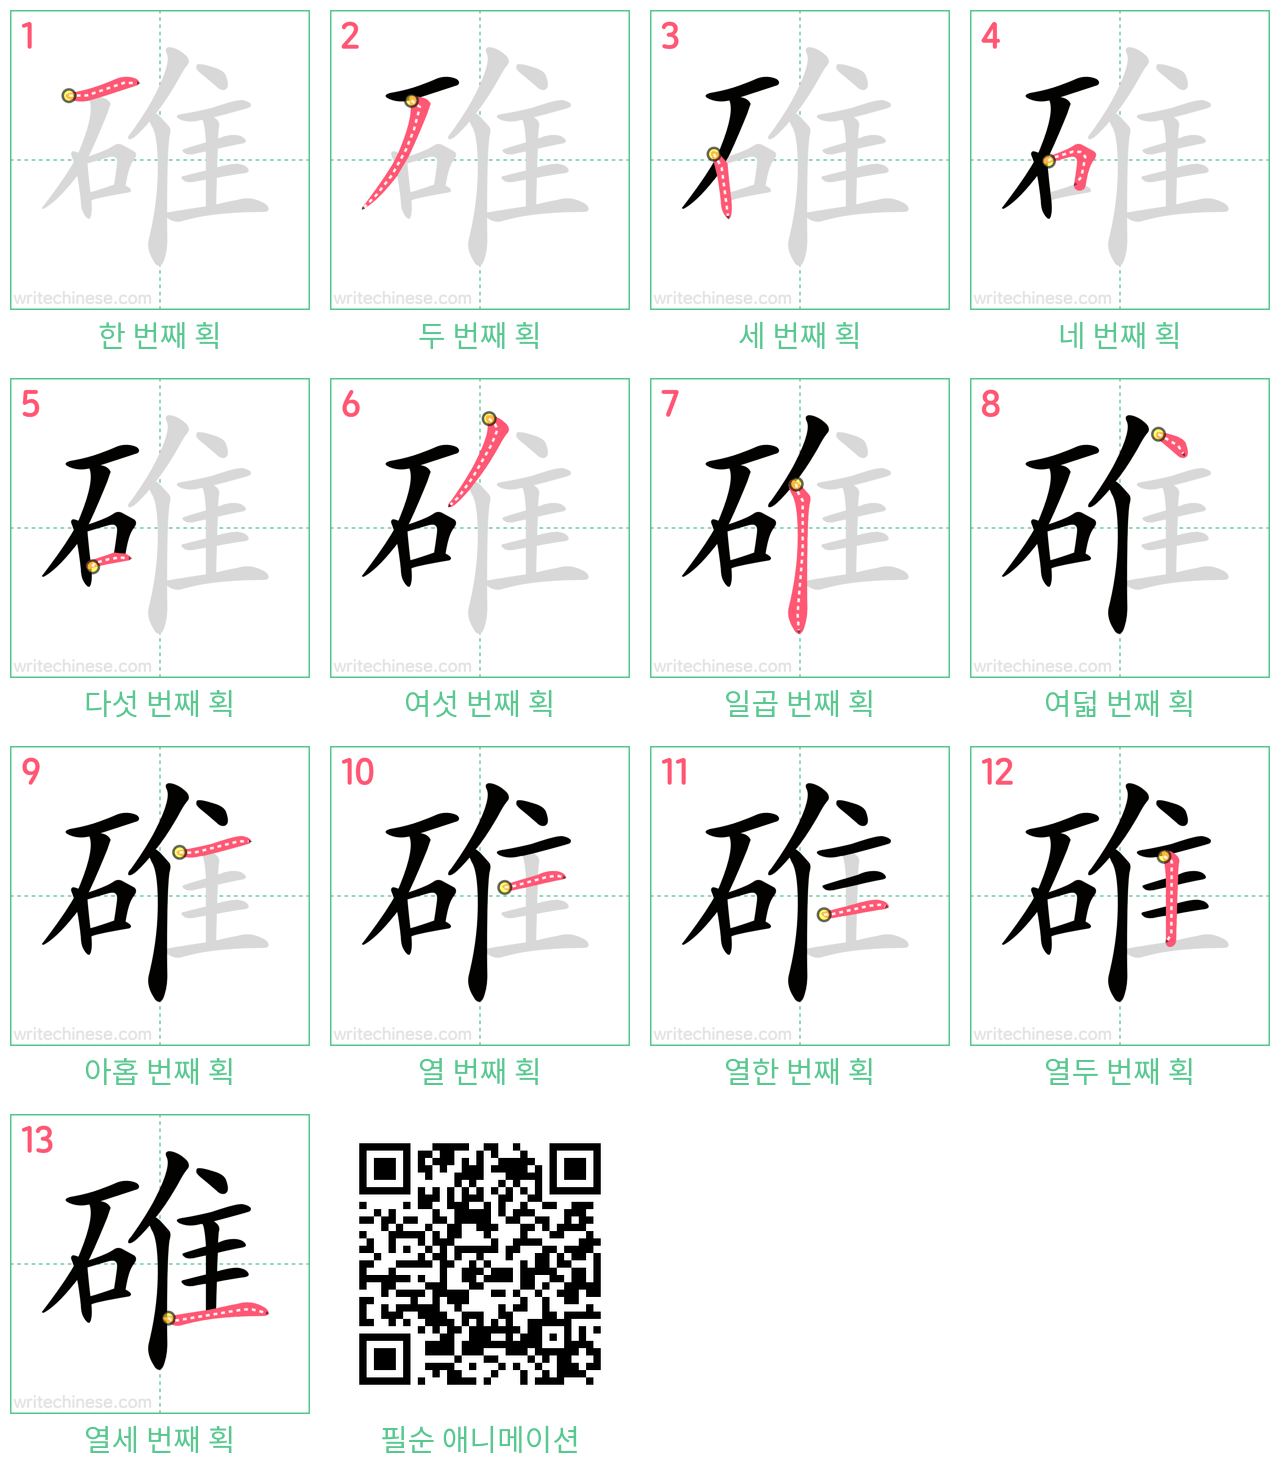 碓 step-by-step stroke order diagrams